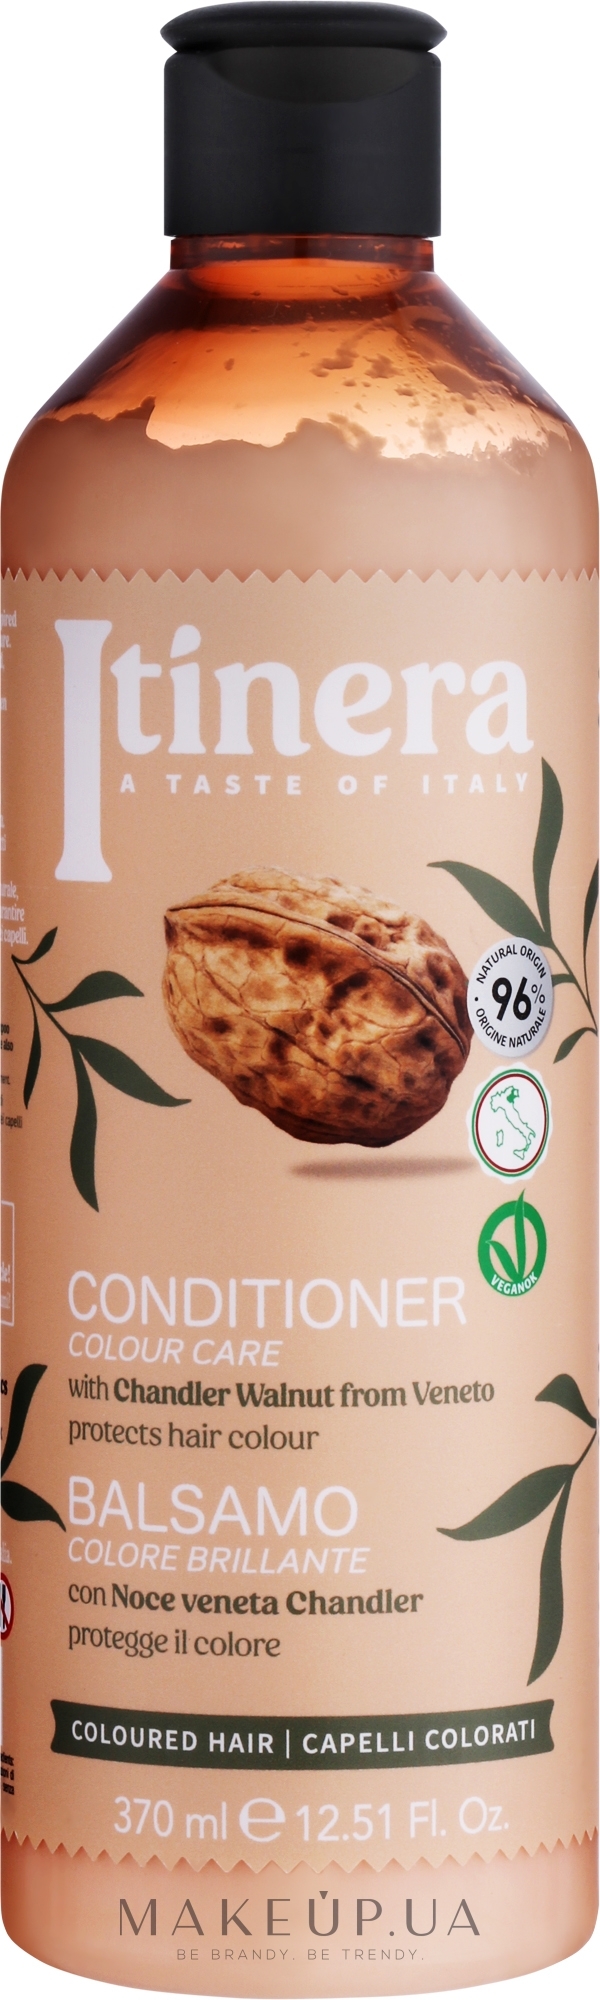 Кондиционер для окрашенных волос с грецким орехом Чандлер - Itinera Chandler Nut Conditioner — фото 370ml